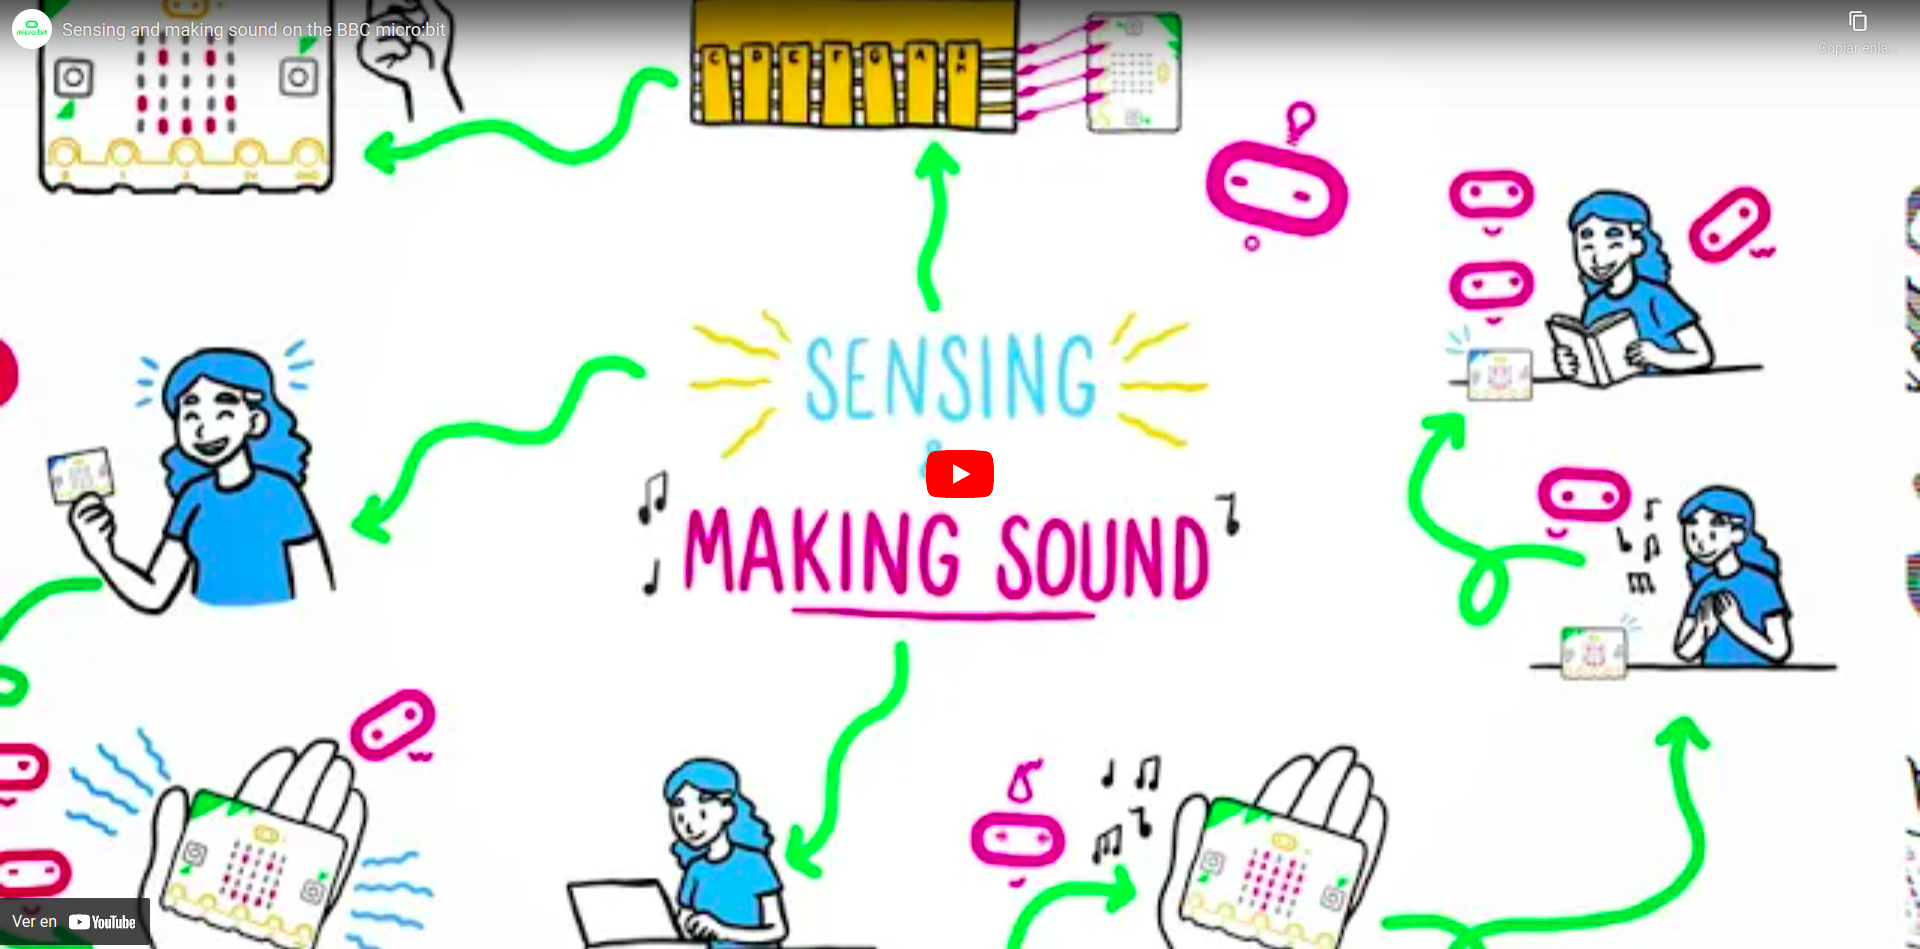 Vídeo que describe el funcionamiento del sensor de sonido de la placa micro:bit